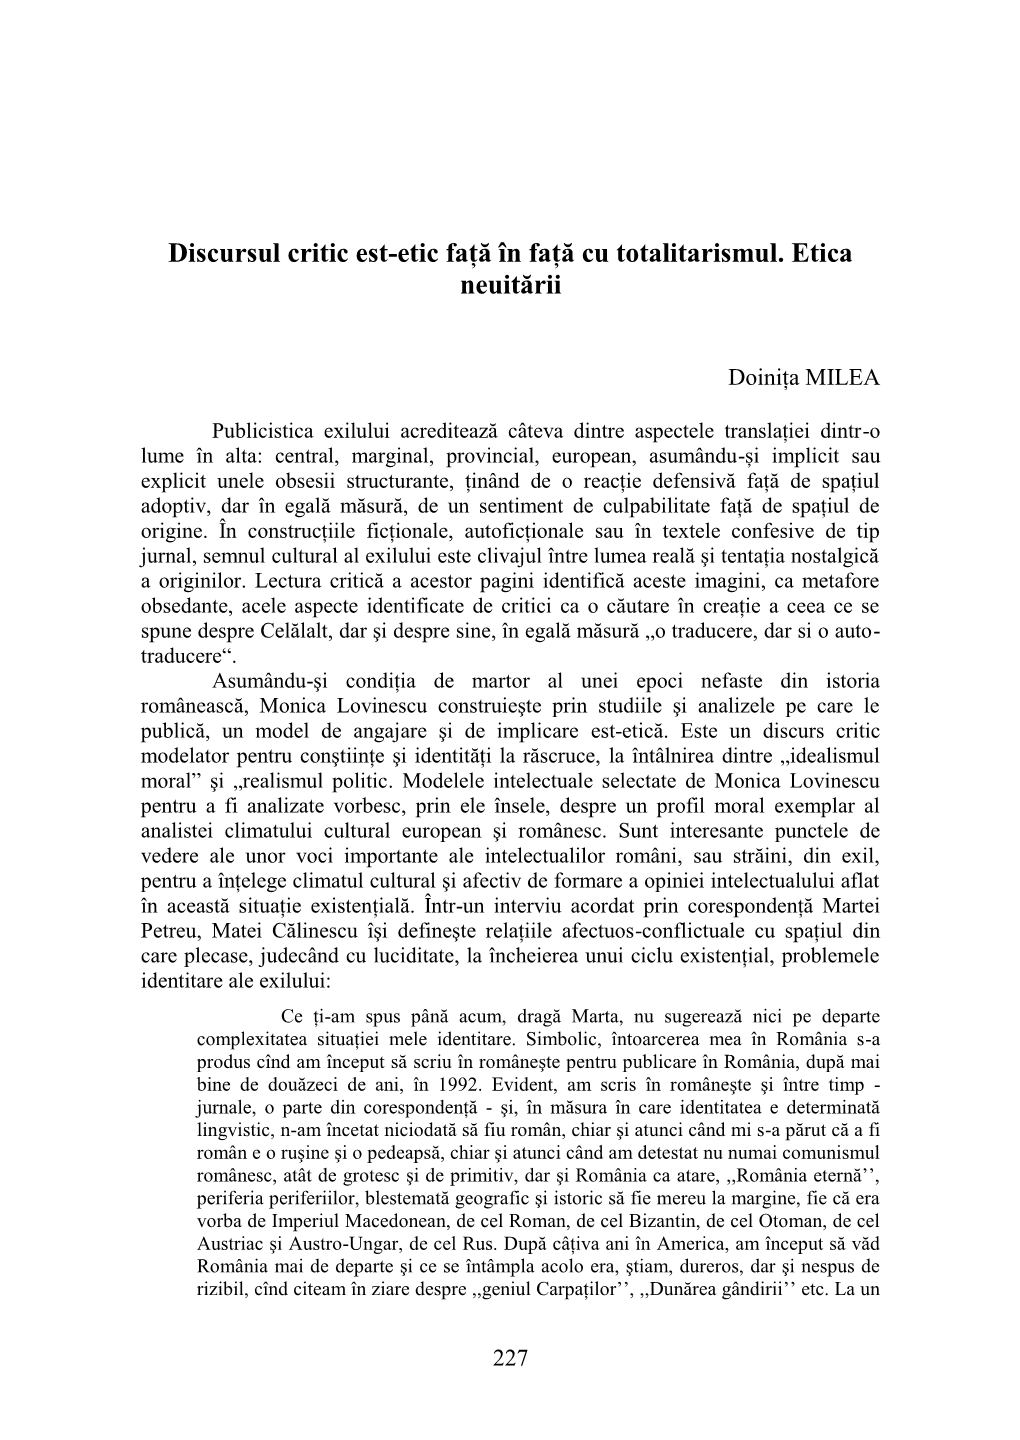 Doiniţa MILEA, Discursul Critic Est-Etic Faţă În Faţă Cu Totalitarismul. Etica